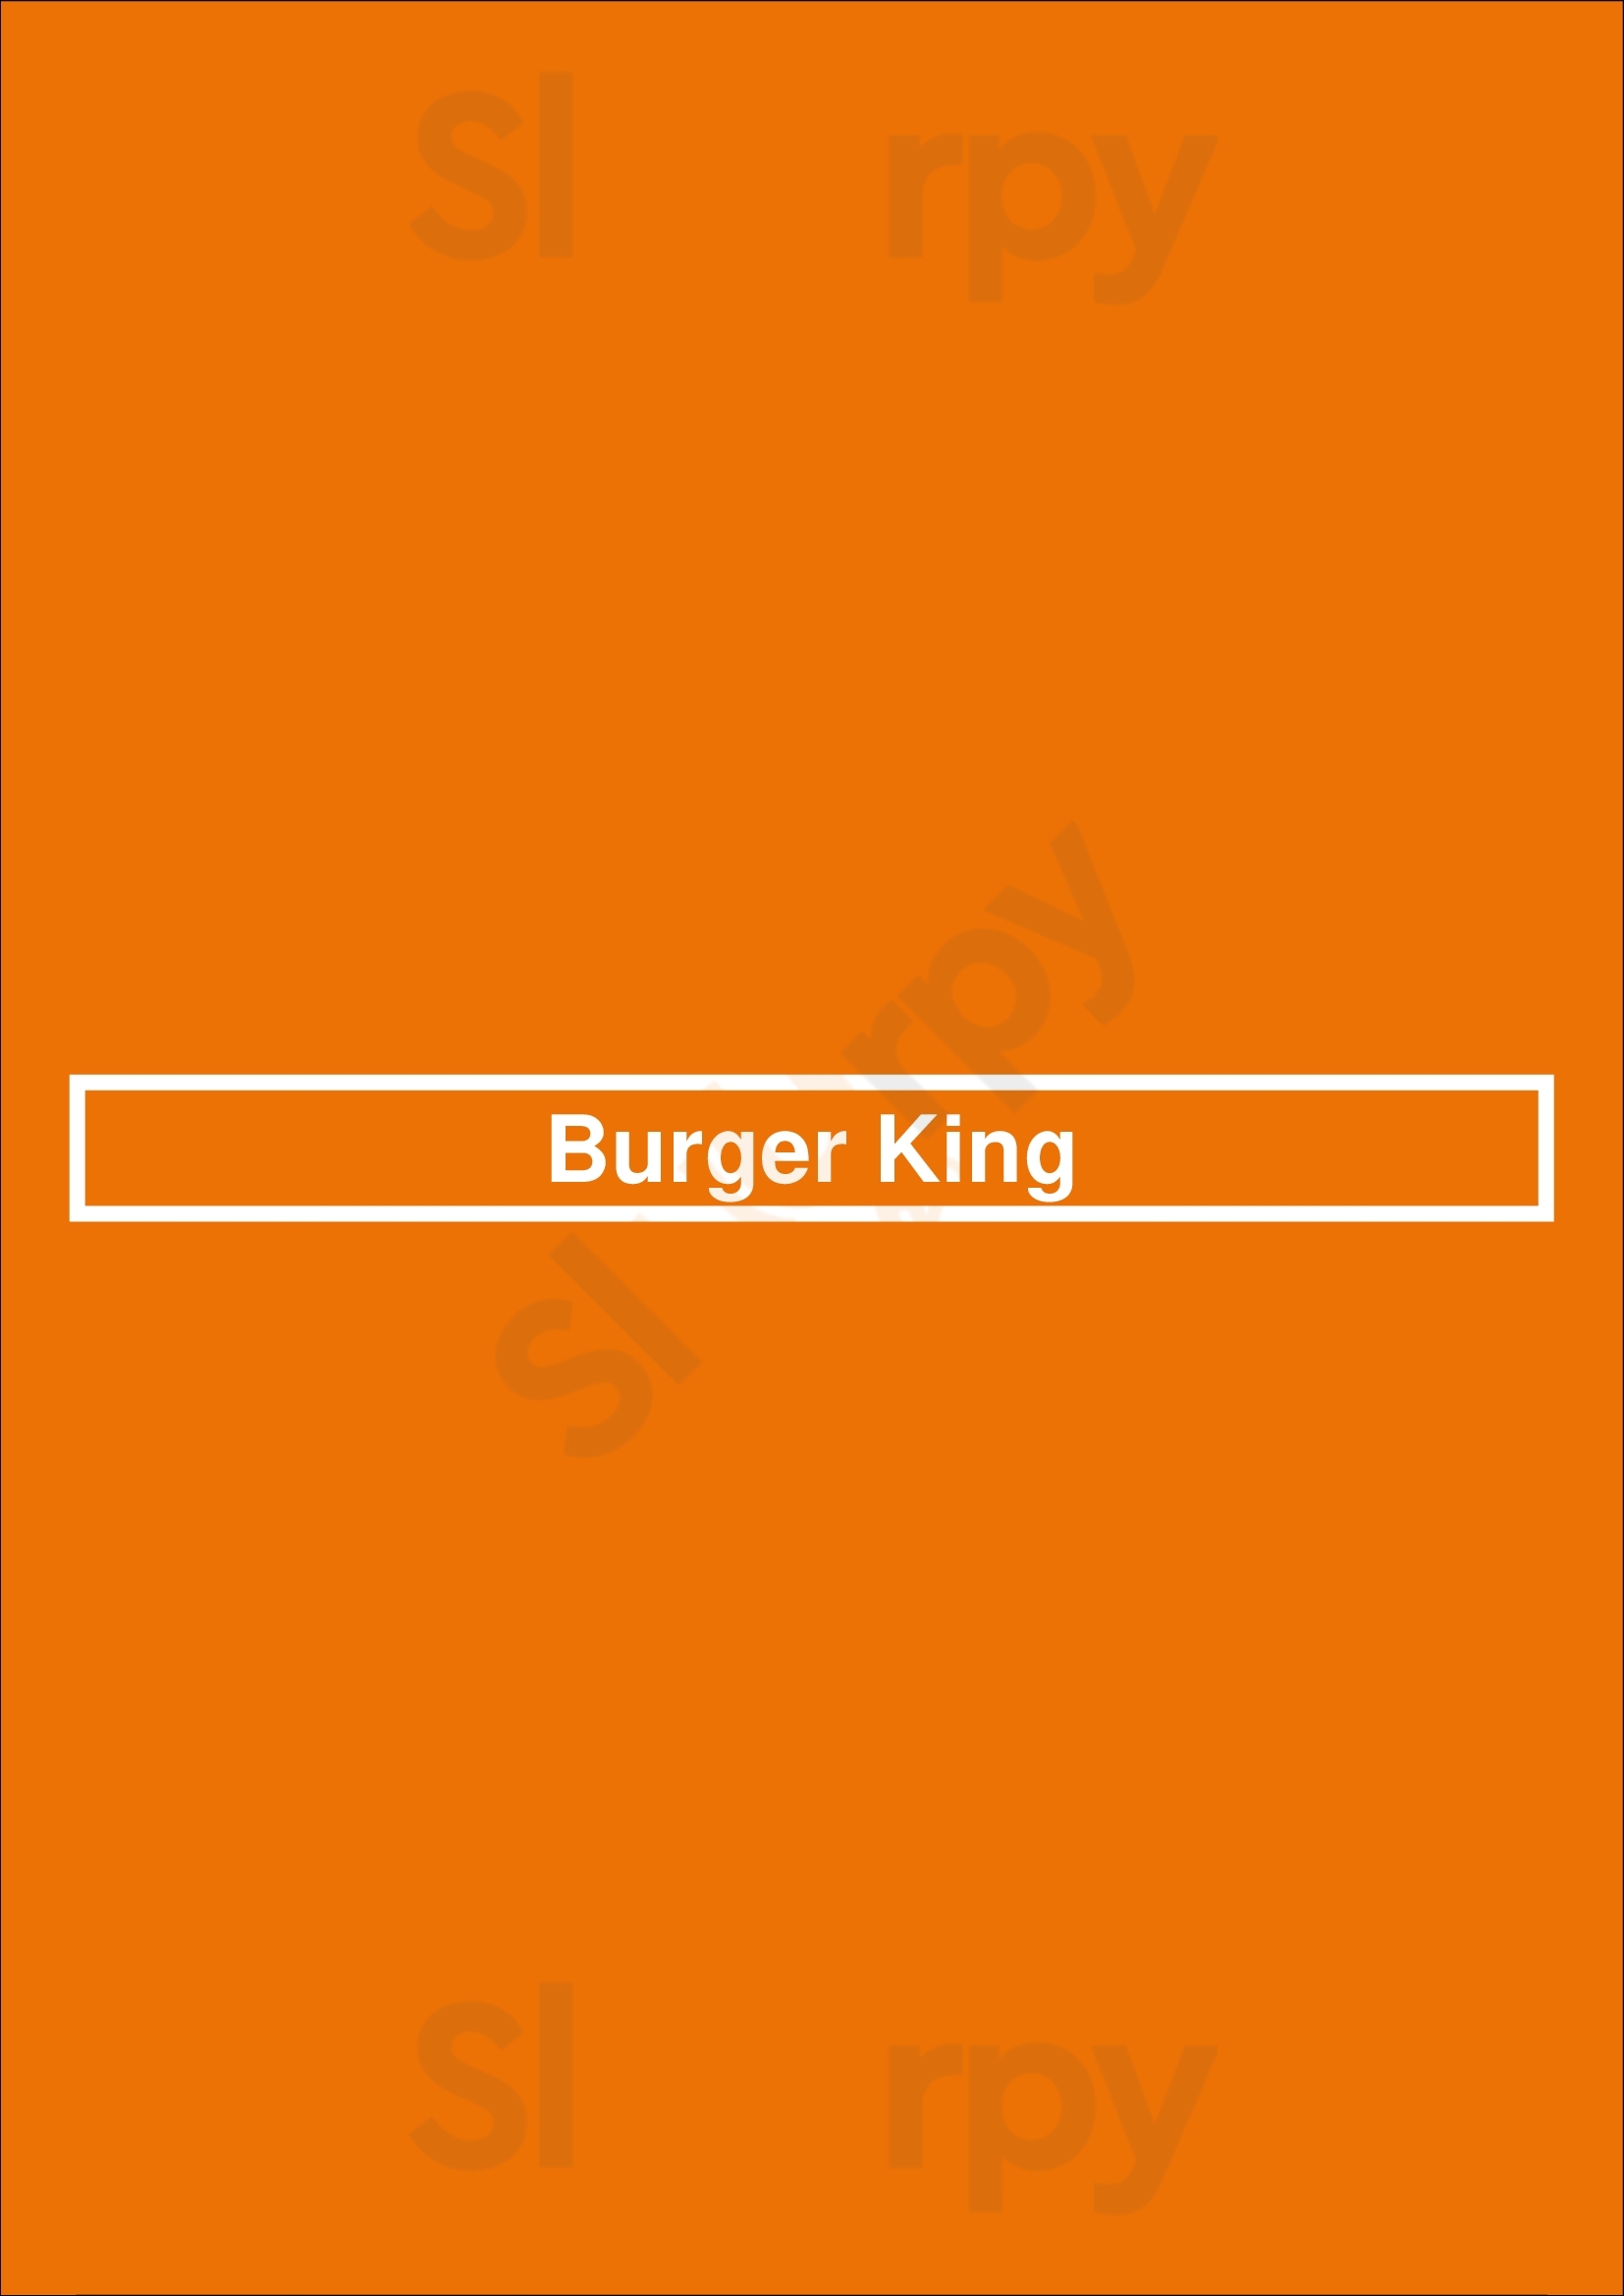 Burger King Wichita Menu - 1